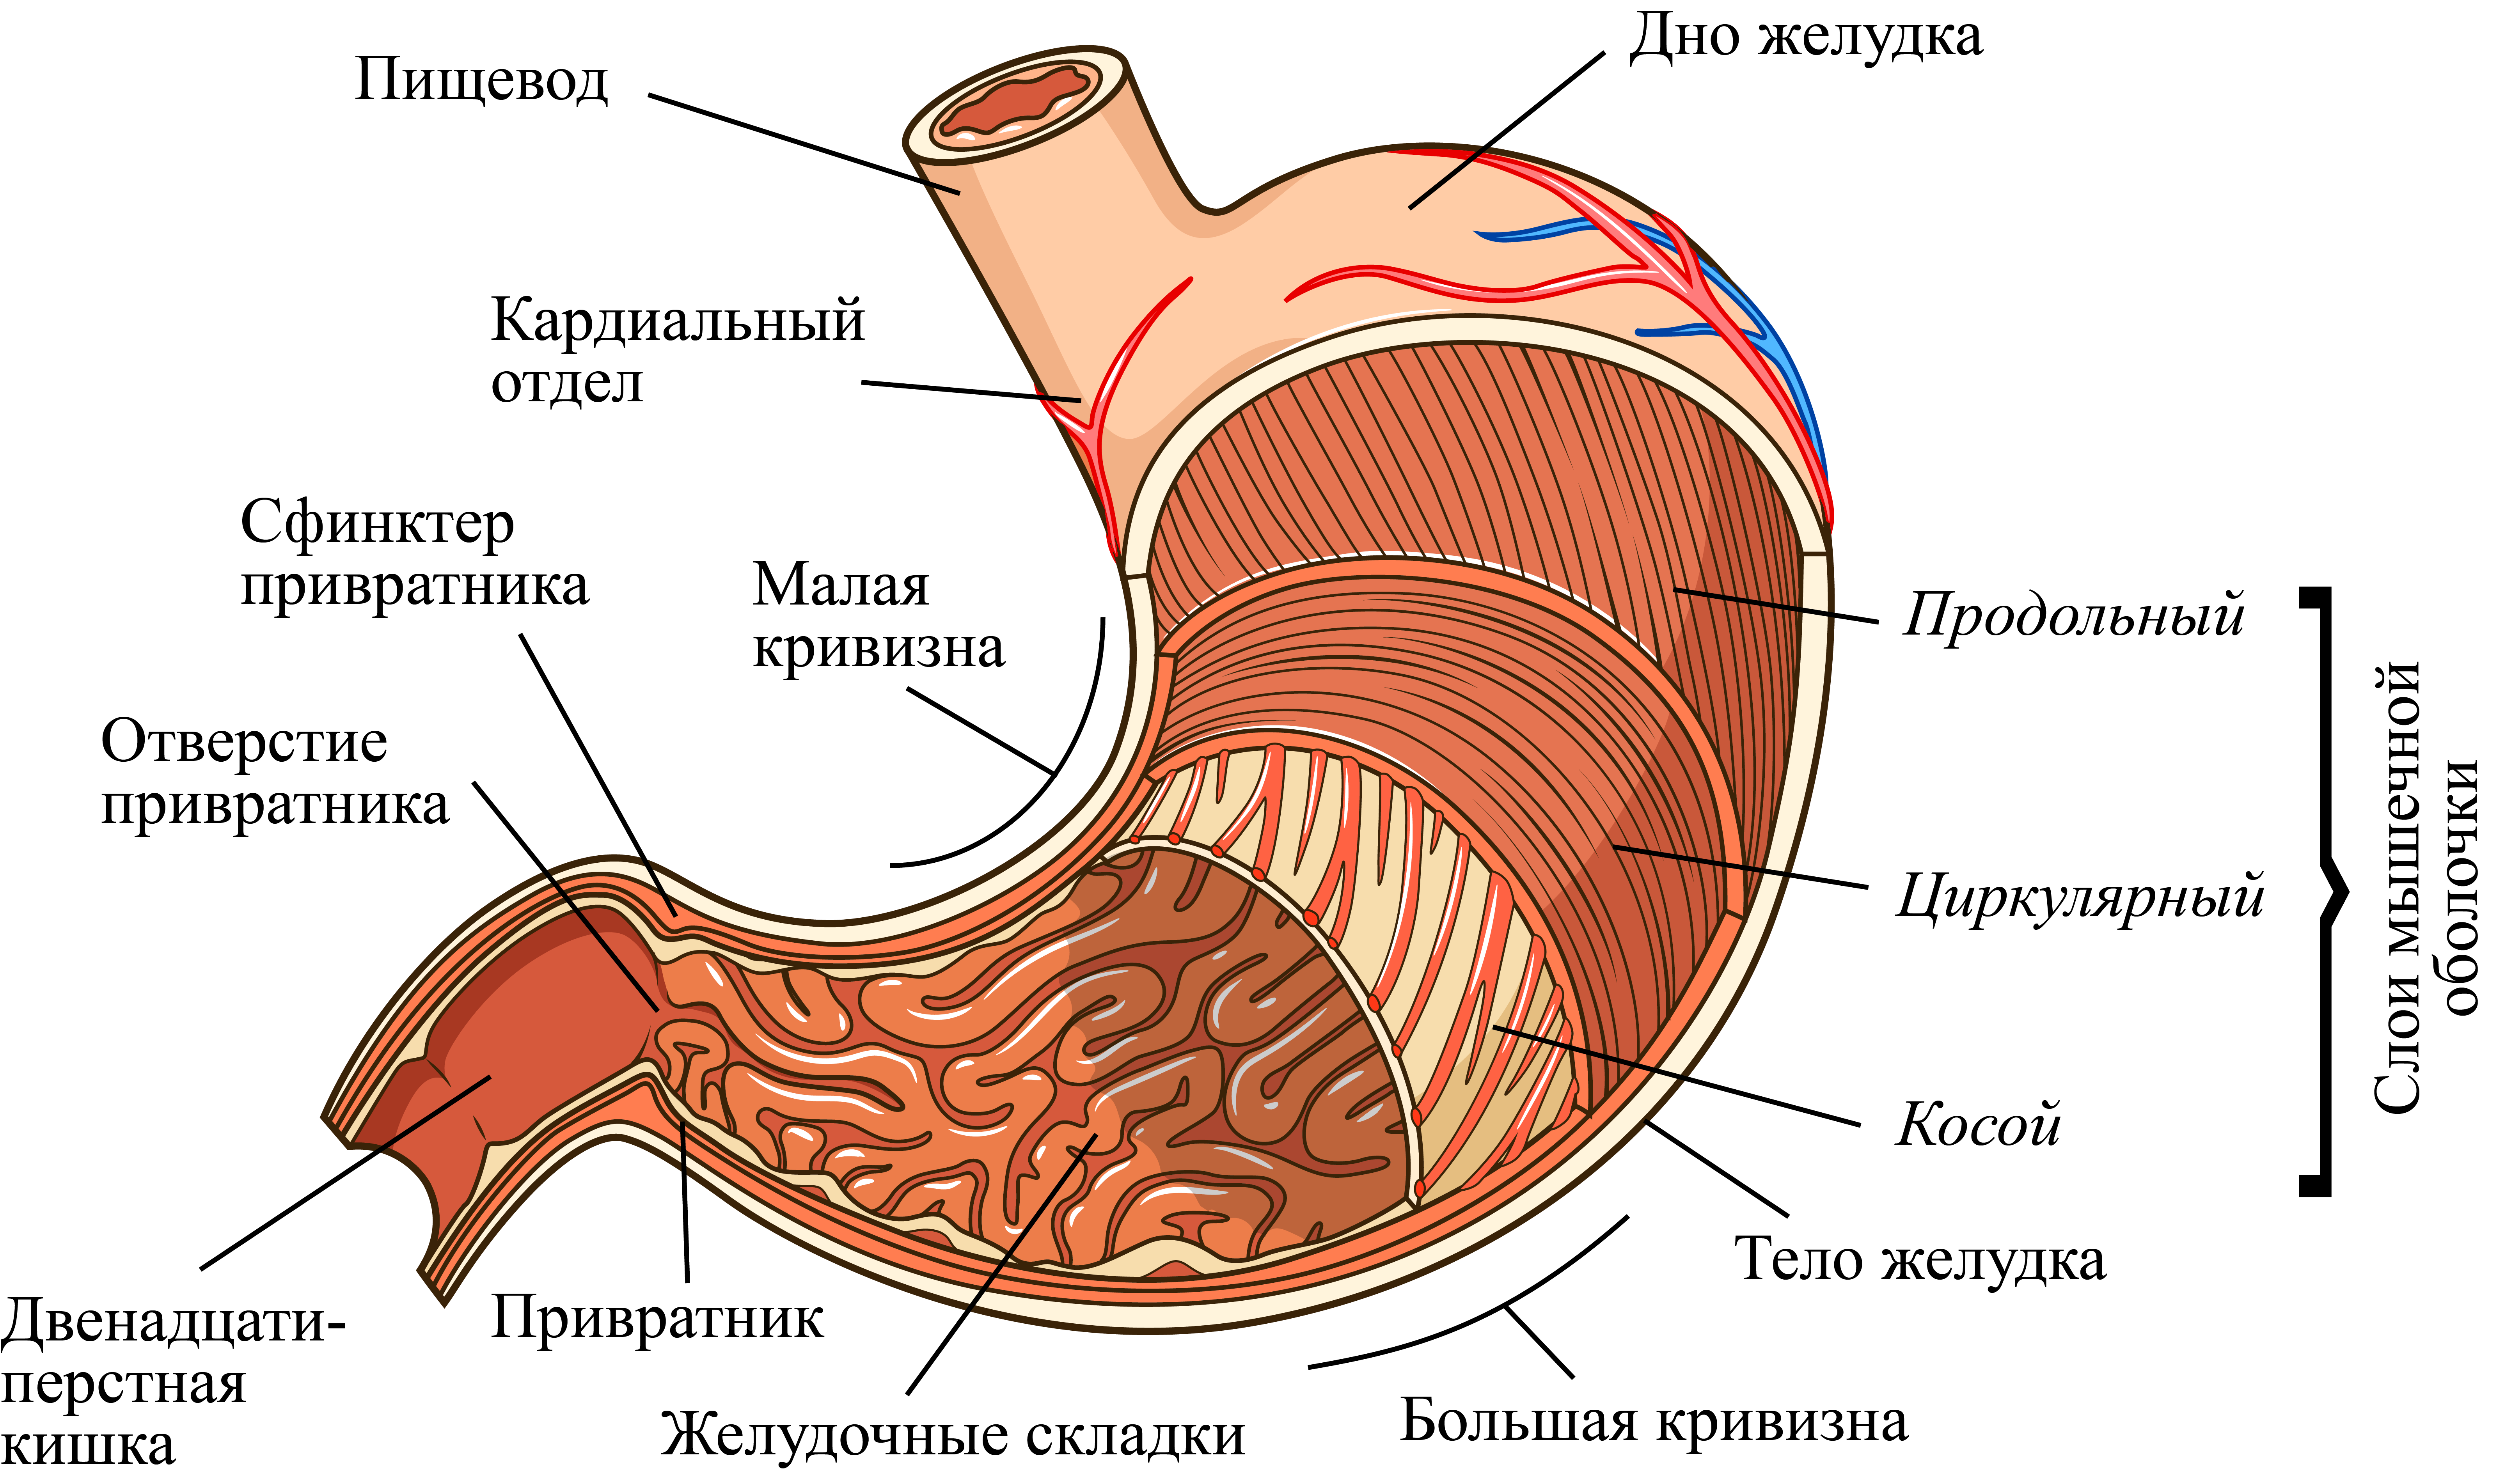 Пищеварительная система желудок анатомия. Внутреннее строение желудка анатомия. Строение стенки желудка человека анатомия. Строение желудка привратник. Для слизистой оболочки желудка характерно наличие